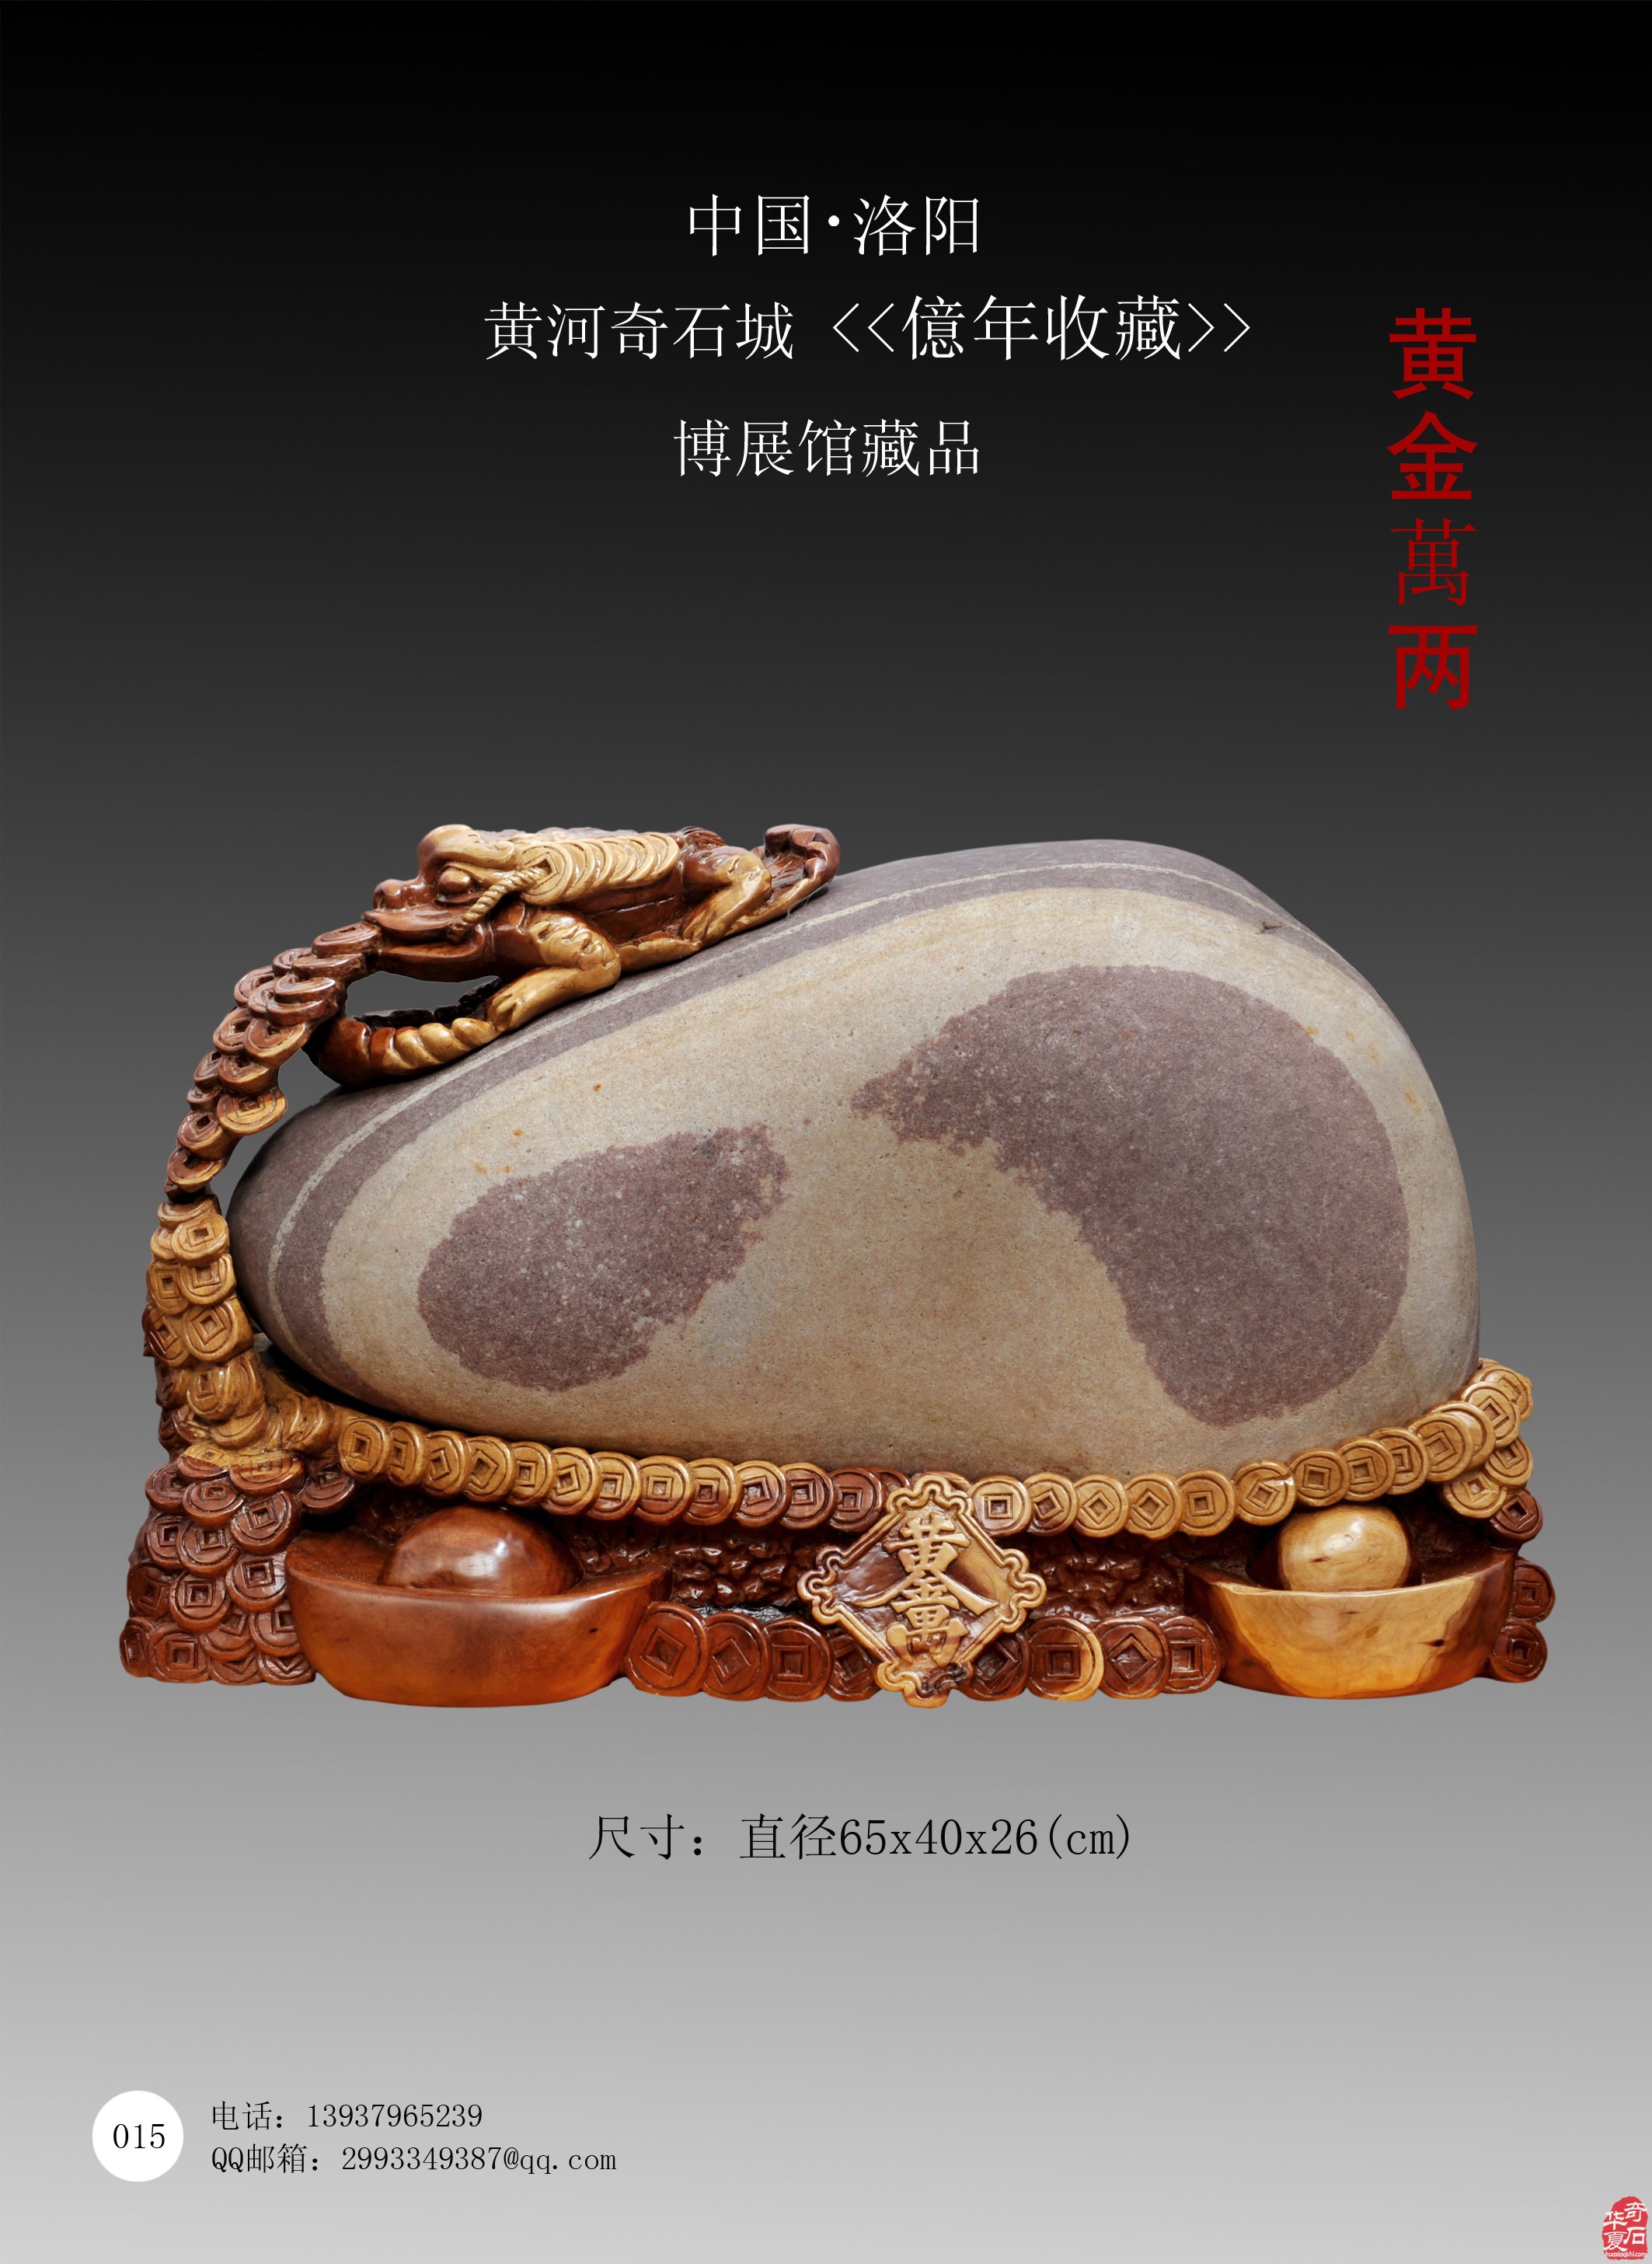 中国洛阳第三十一届国际赏石文化艺术展暨交易会